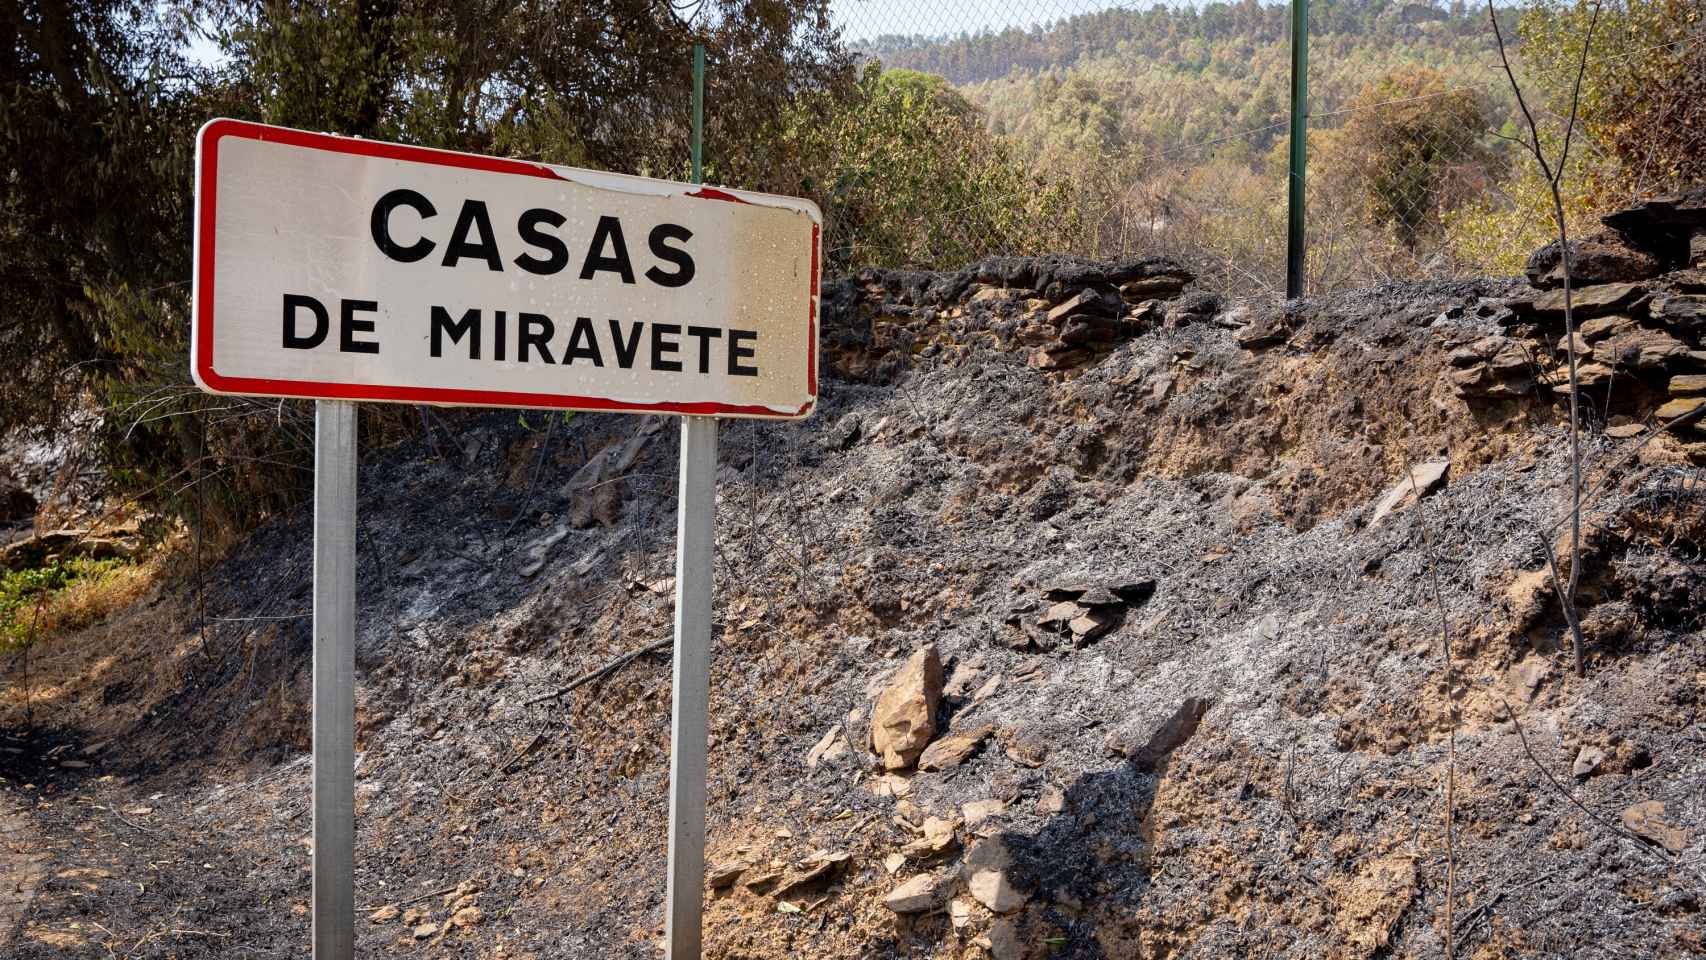 Dejaron arder el pueblo para proteger Monfragüe": vecinos y ganaderos  increpan a Vara y Sánchez